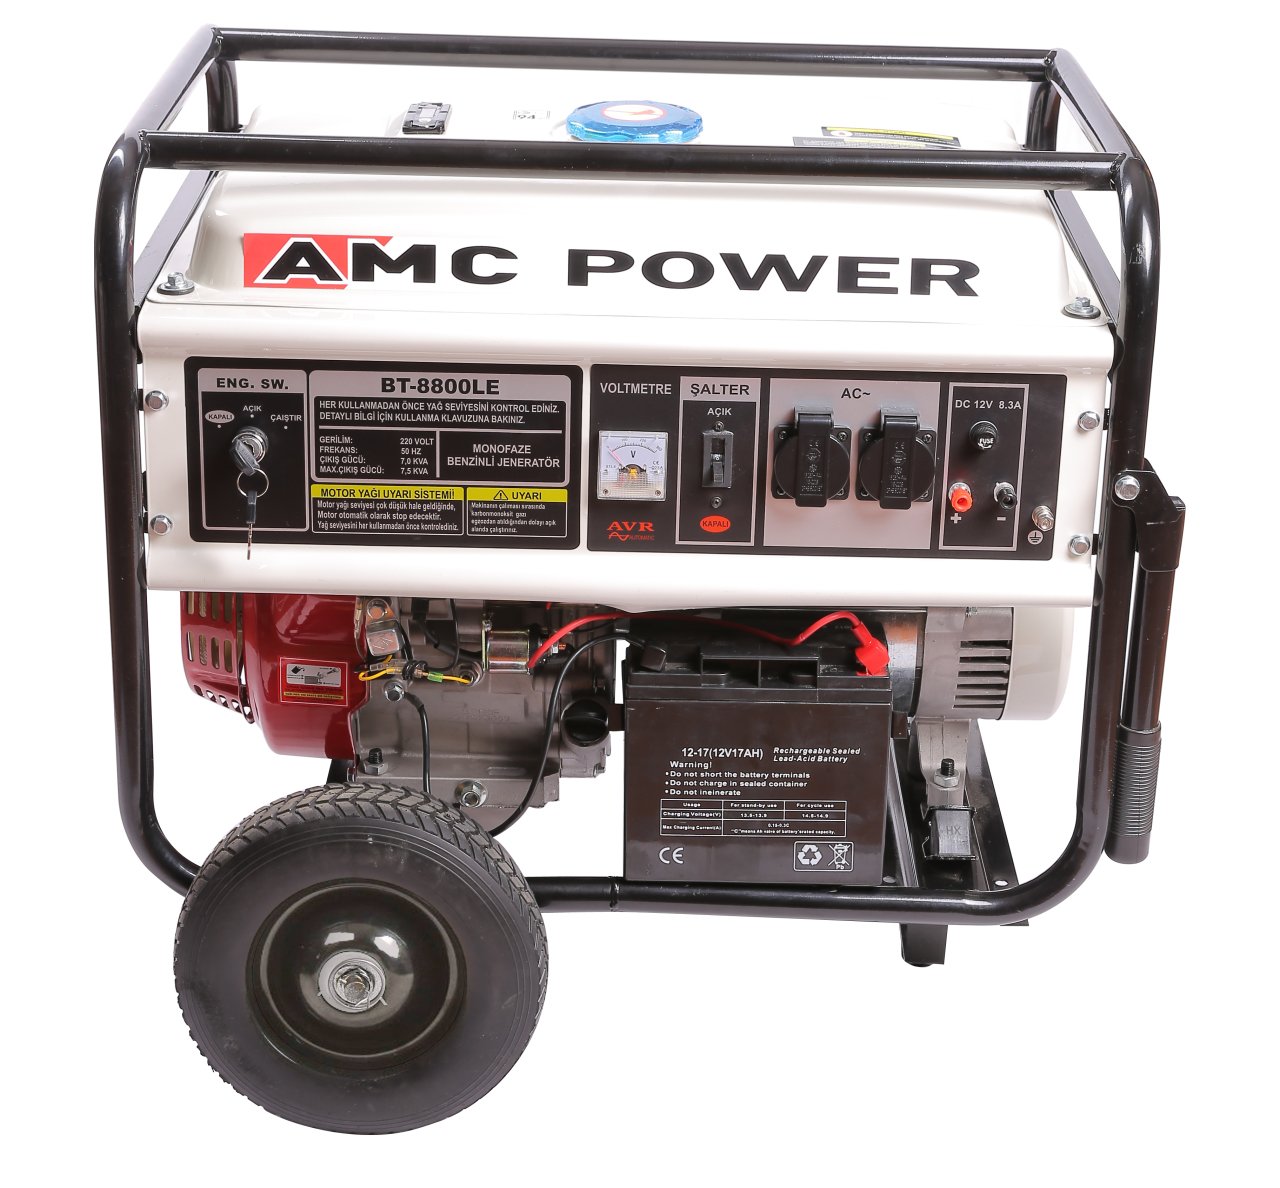 Amcpower 7,5 KVA Benzinli Jeneratör